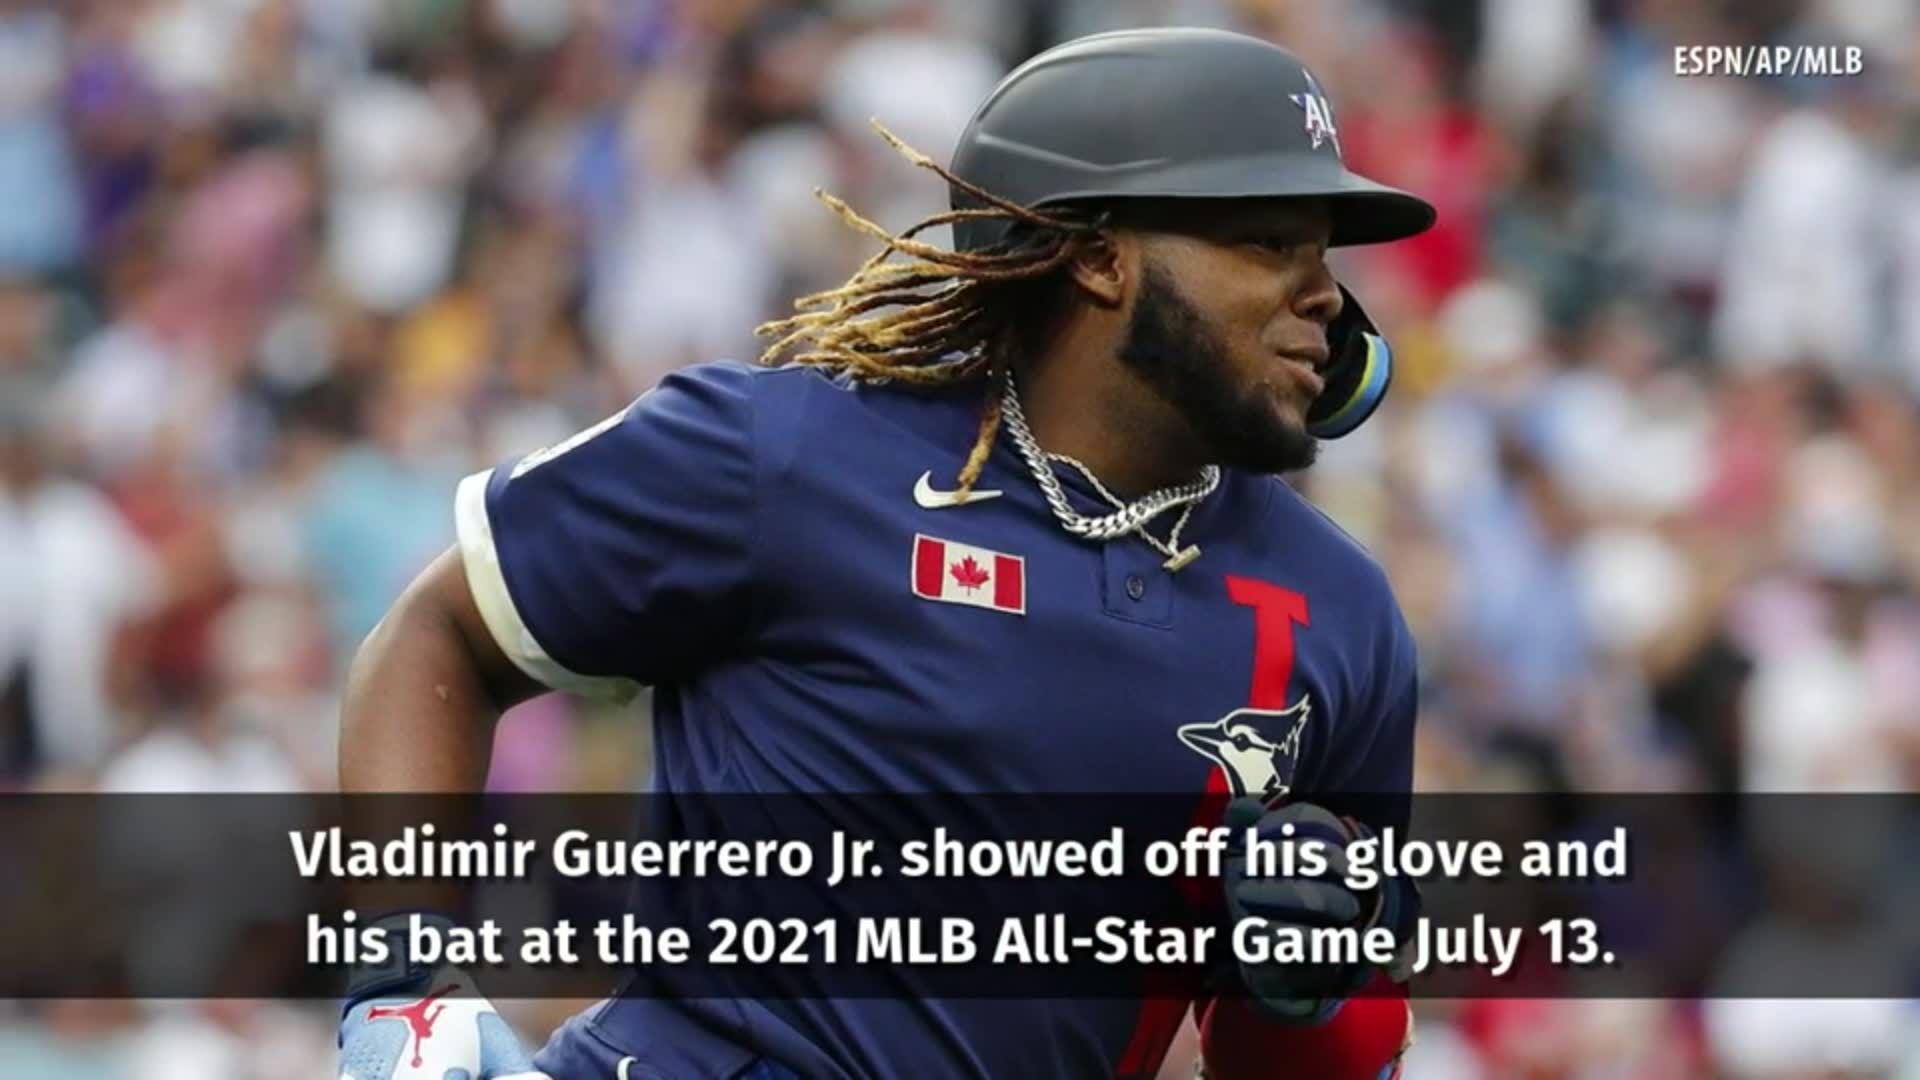 Vladimir Guerrero Jr. All-Star glove